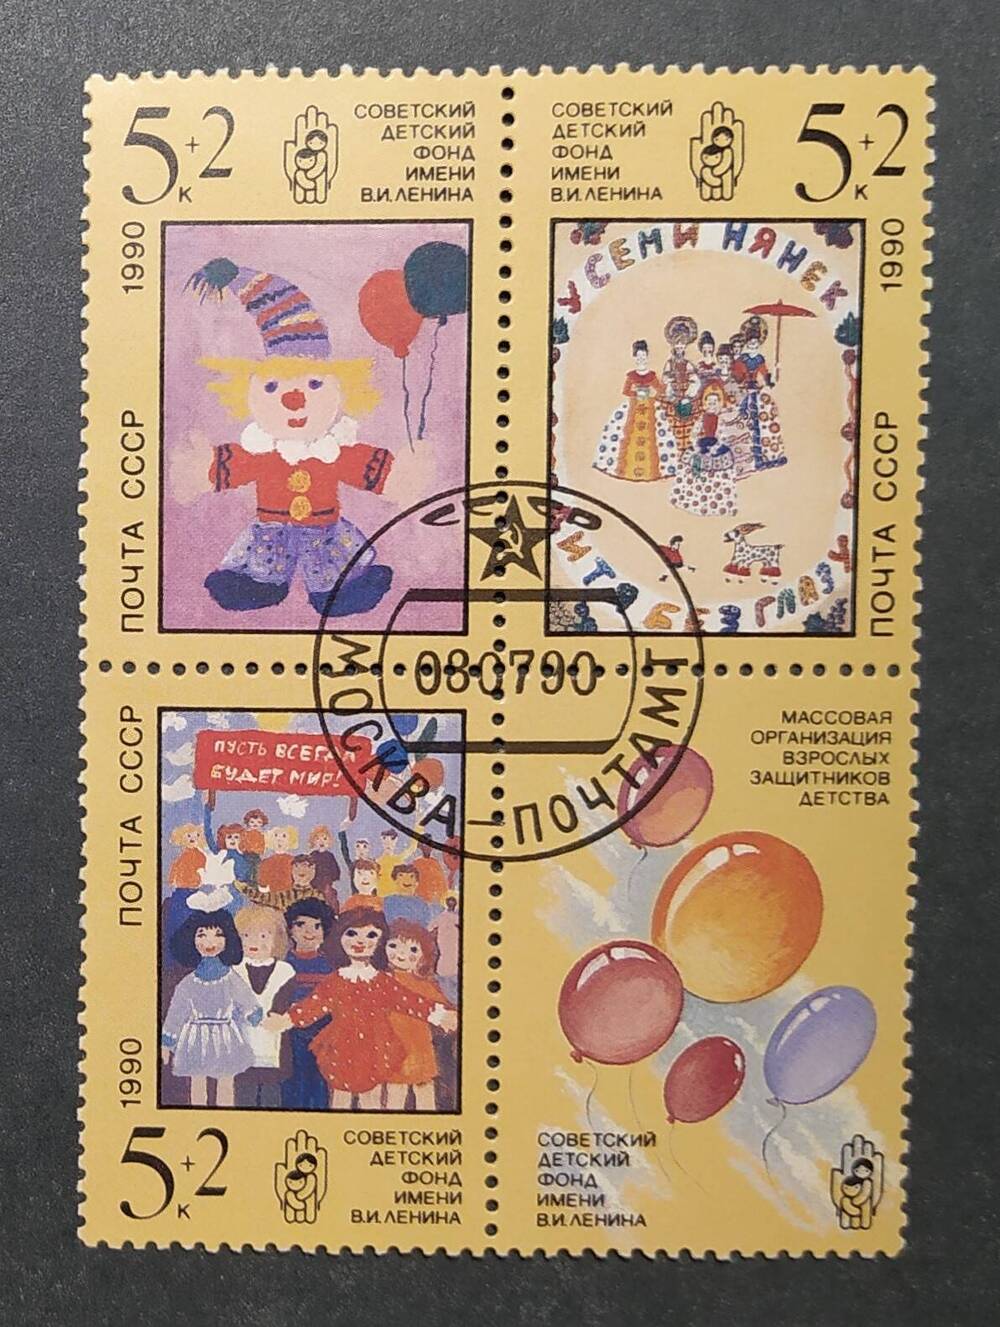 Сцепка почтовых марок  Советский детский фонд имени В.И.Ленина.